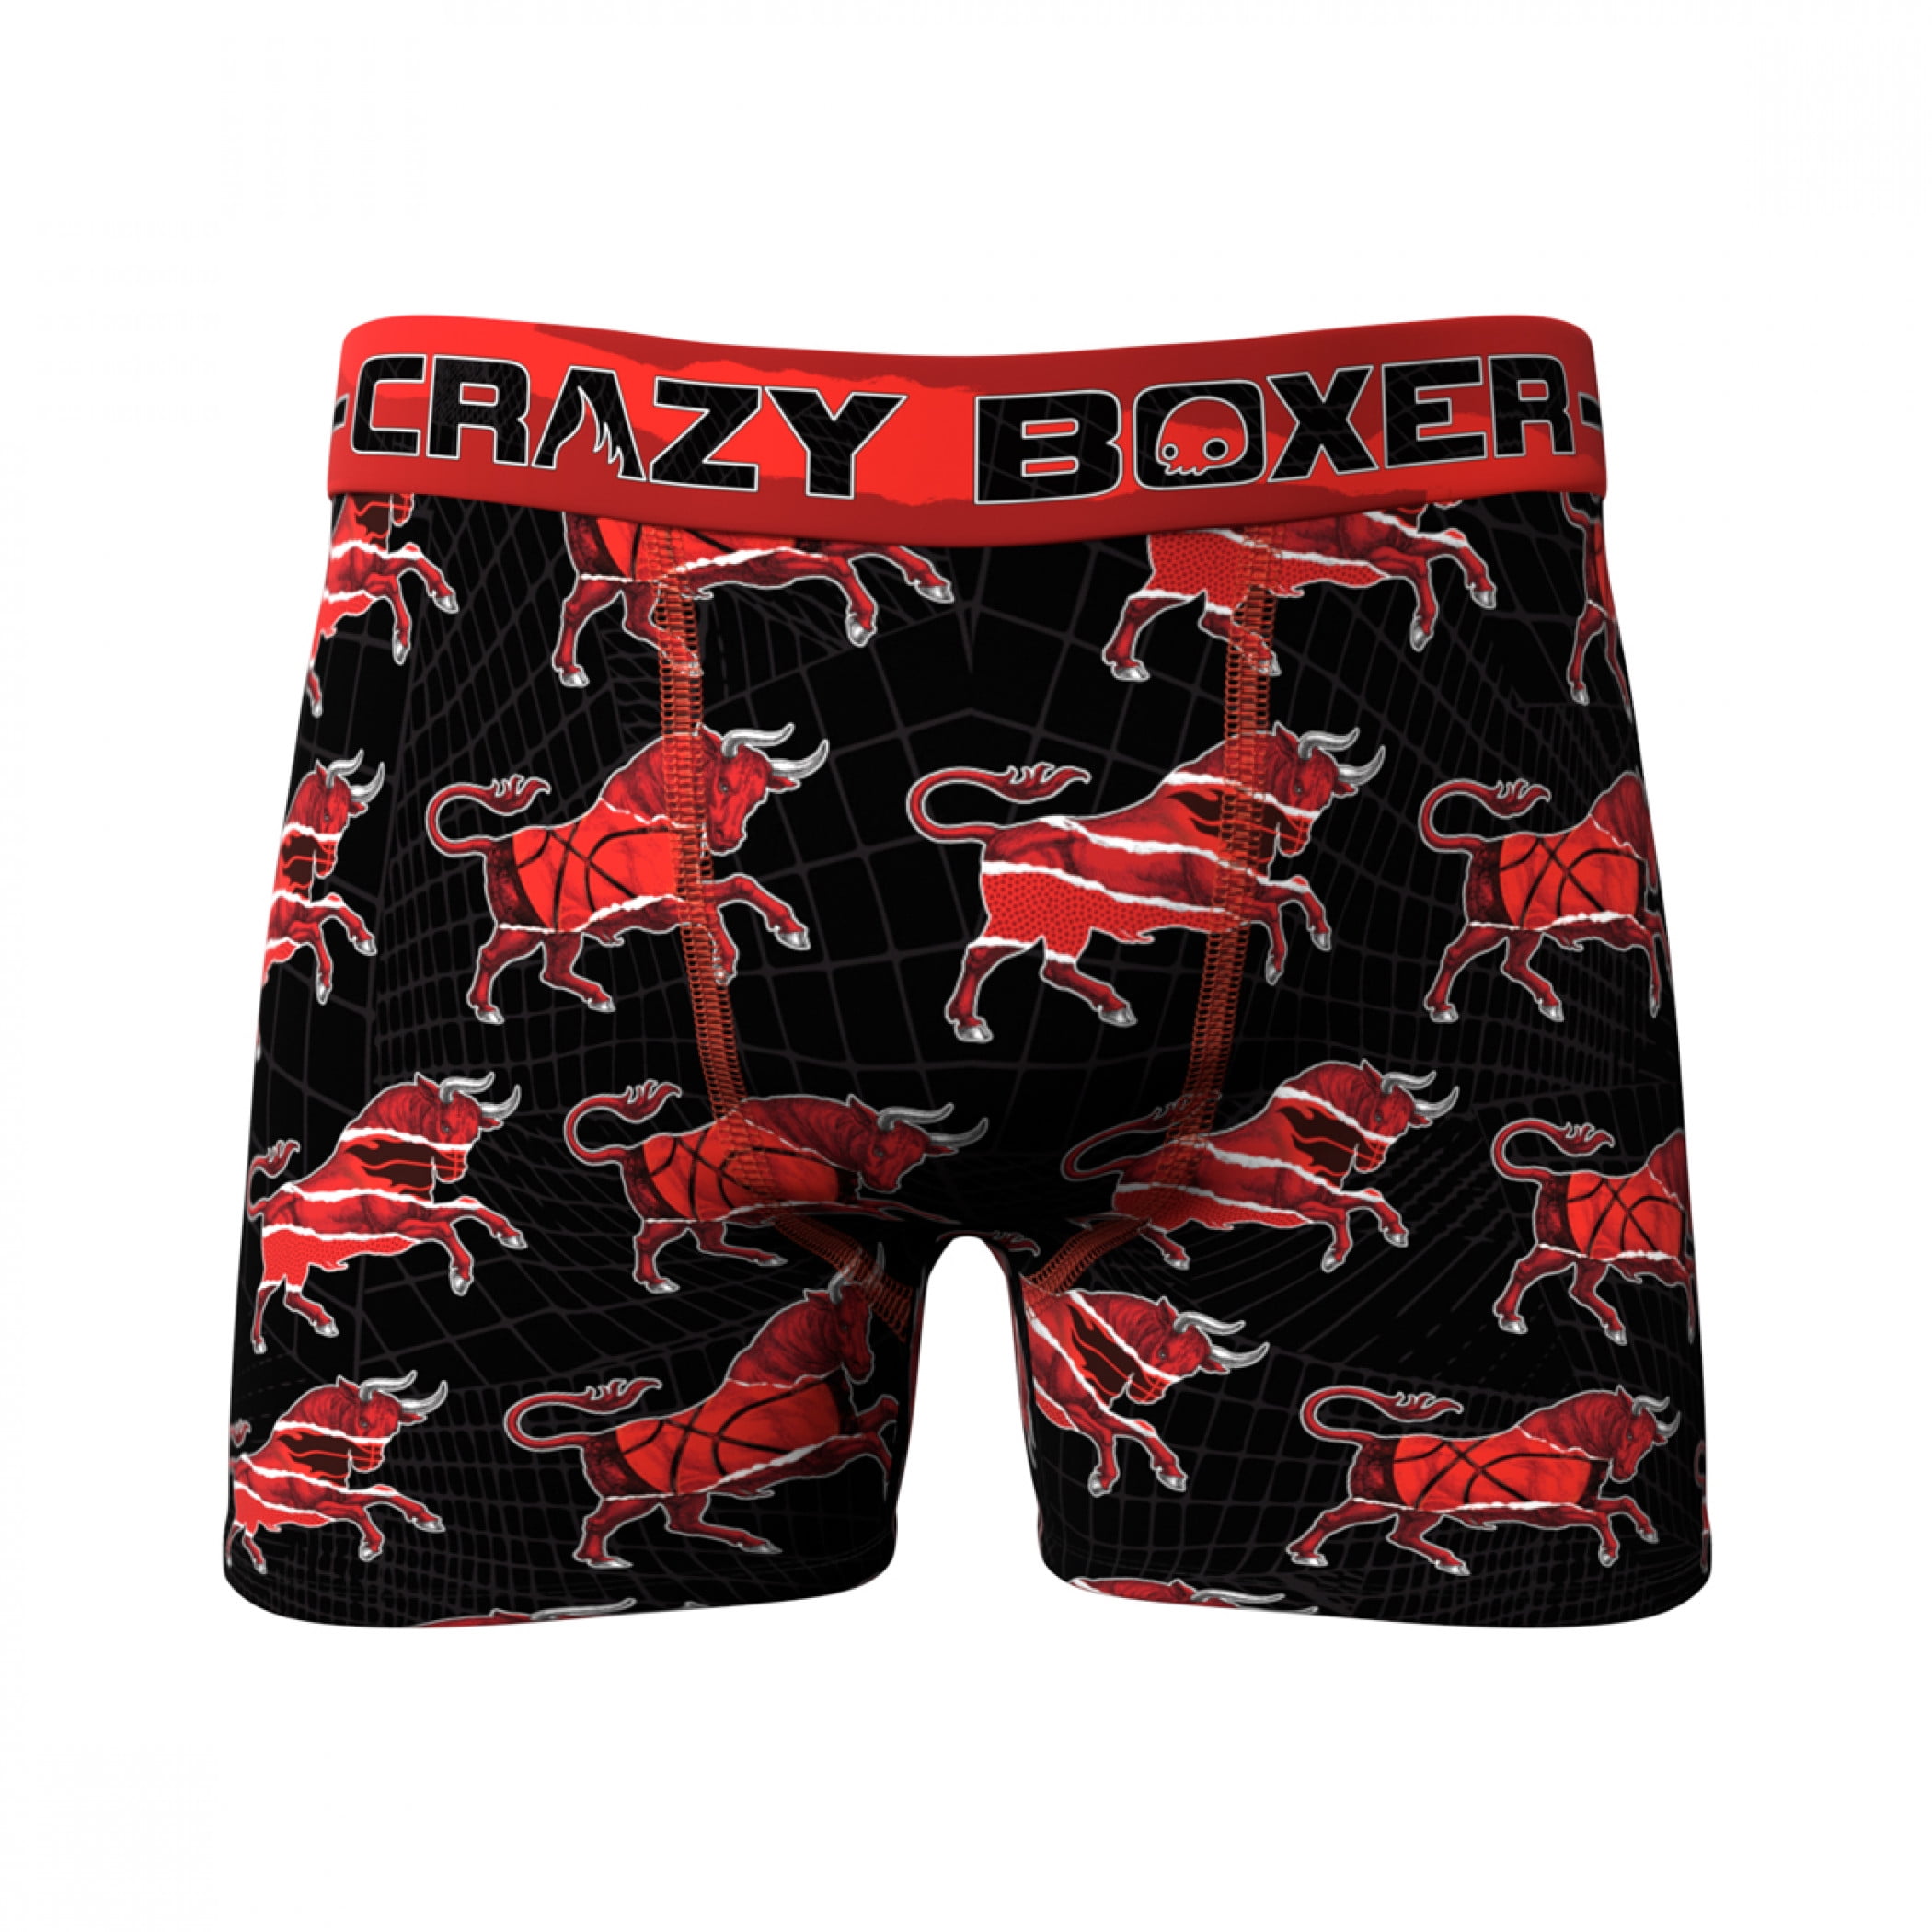 Mens 2-Pack Boxer Briefs Polyester Underwear Trunk Underwear with Tropical Birds Design 